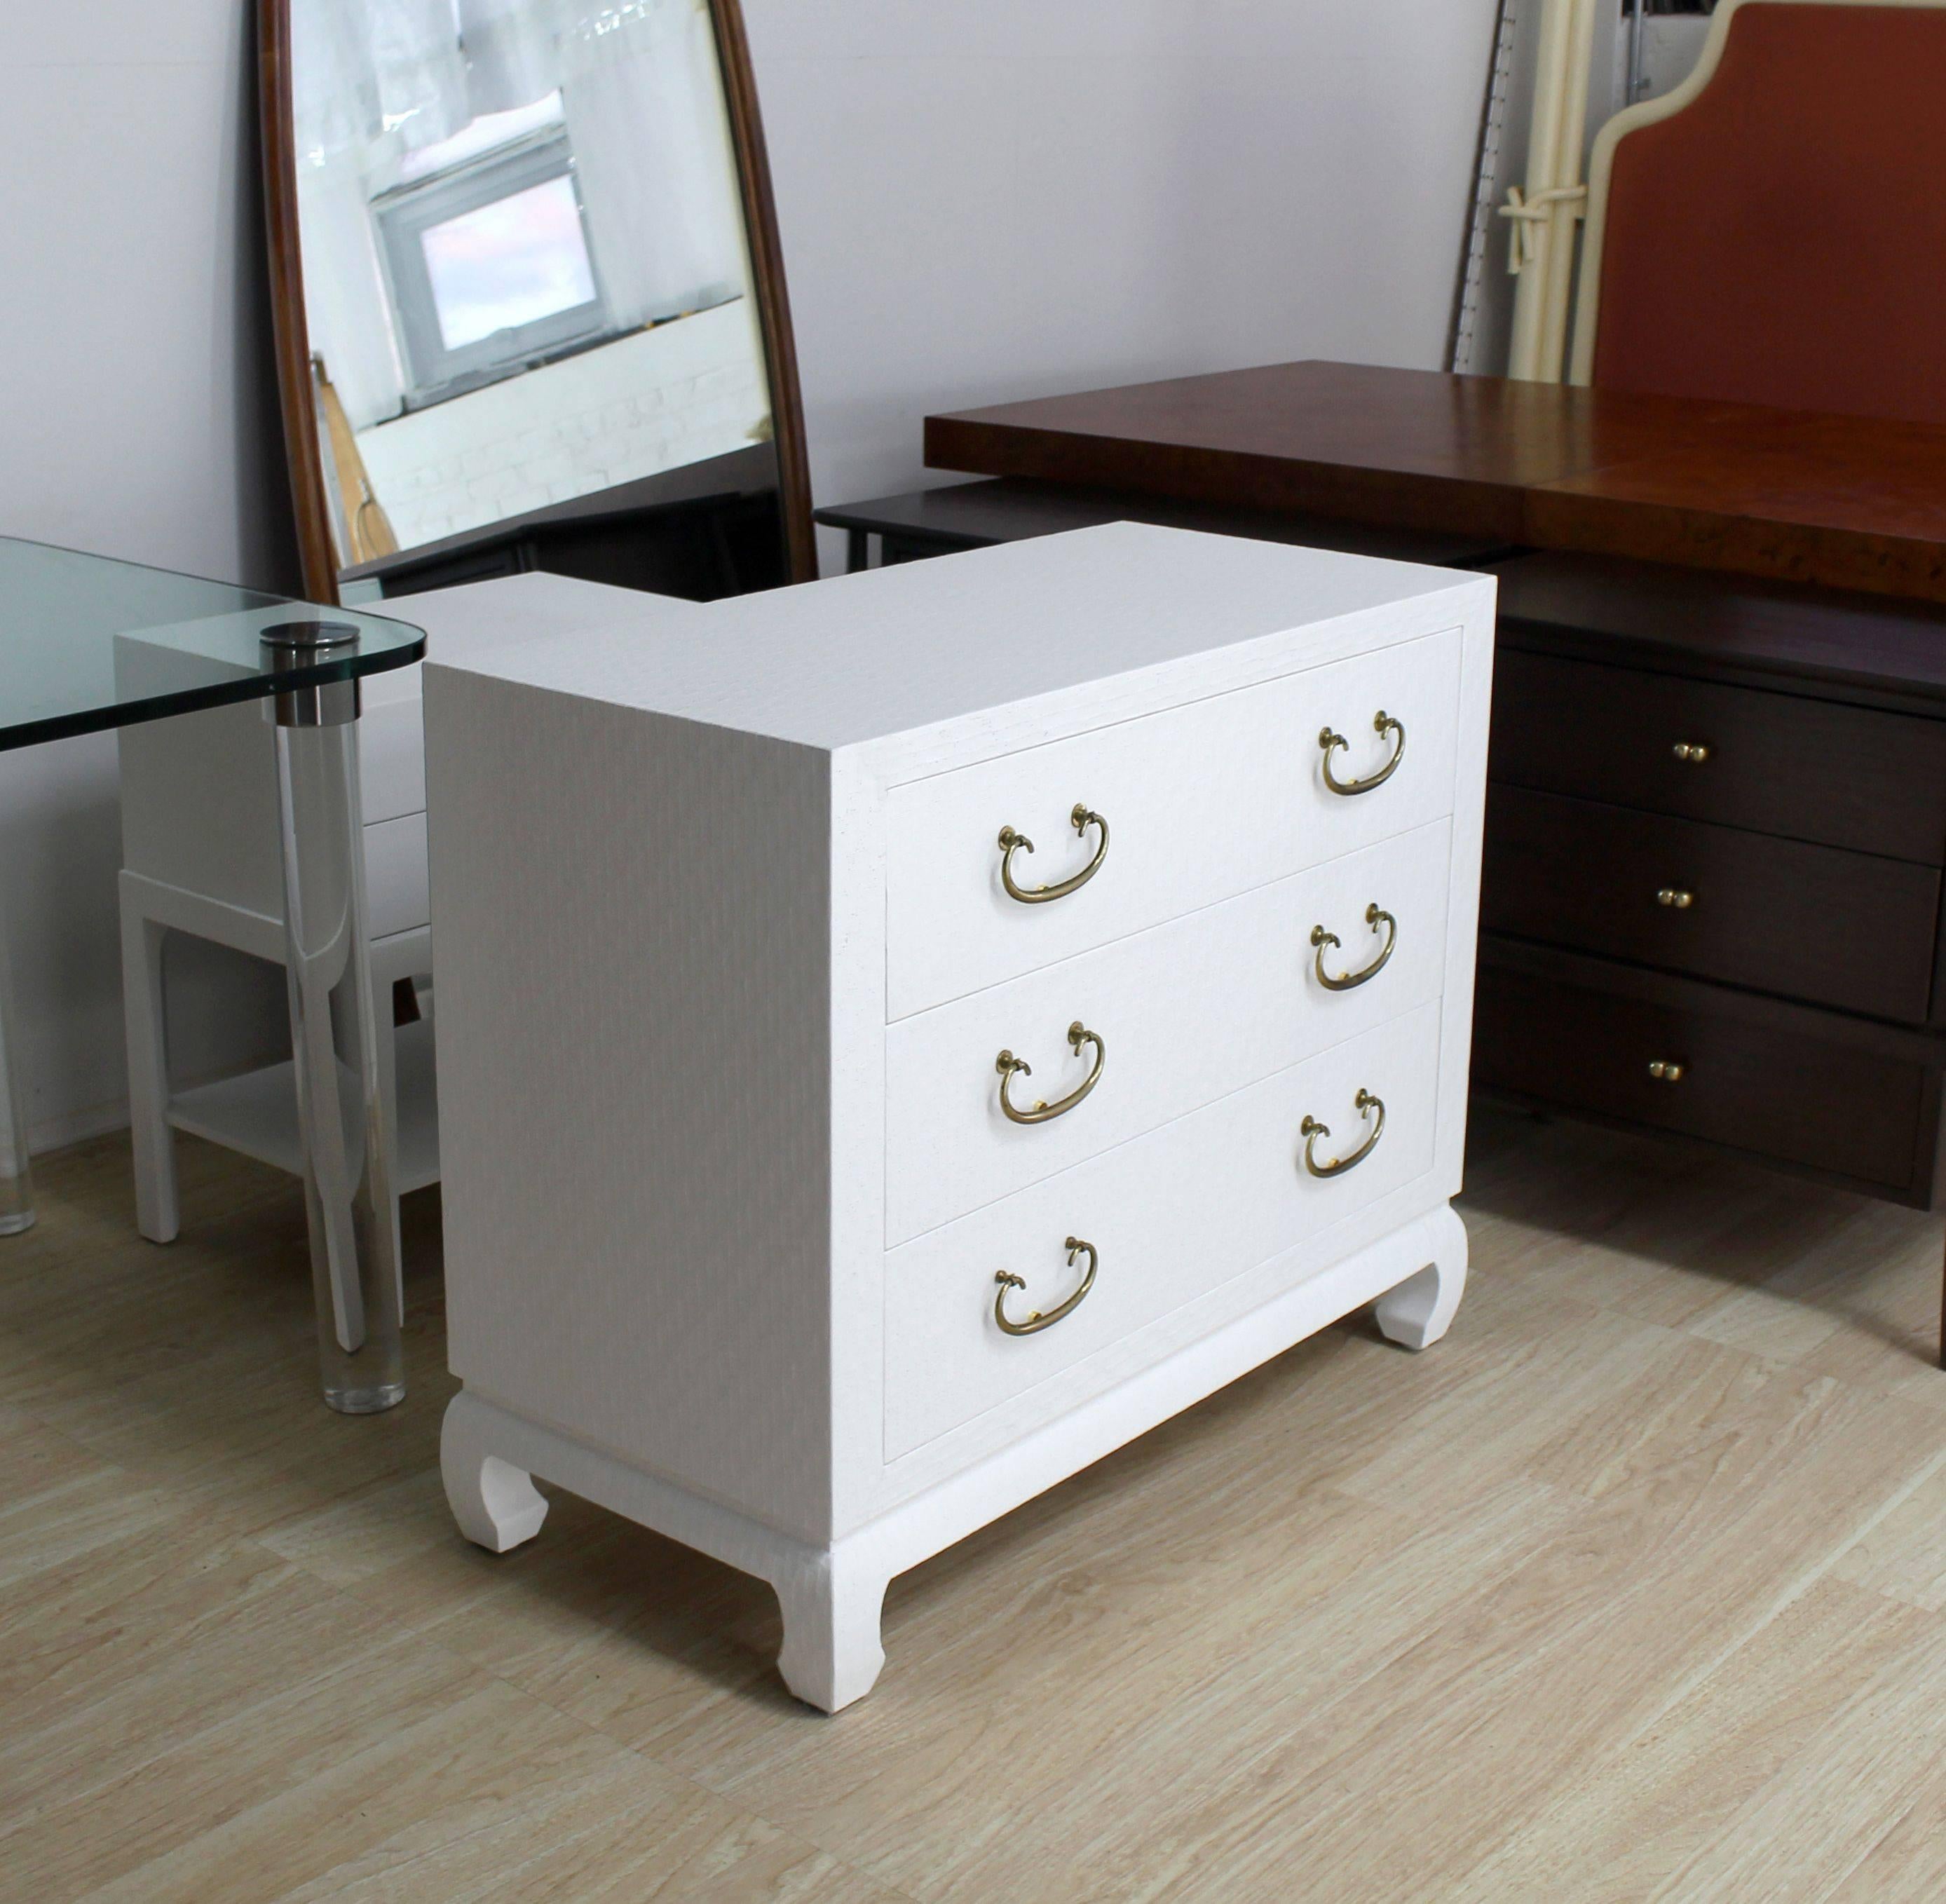 cloth cabinet furniture